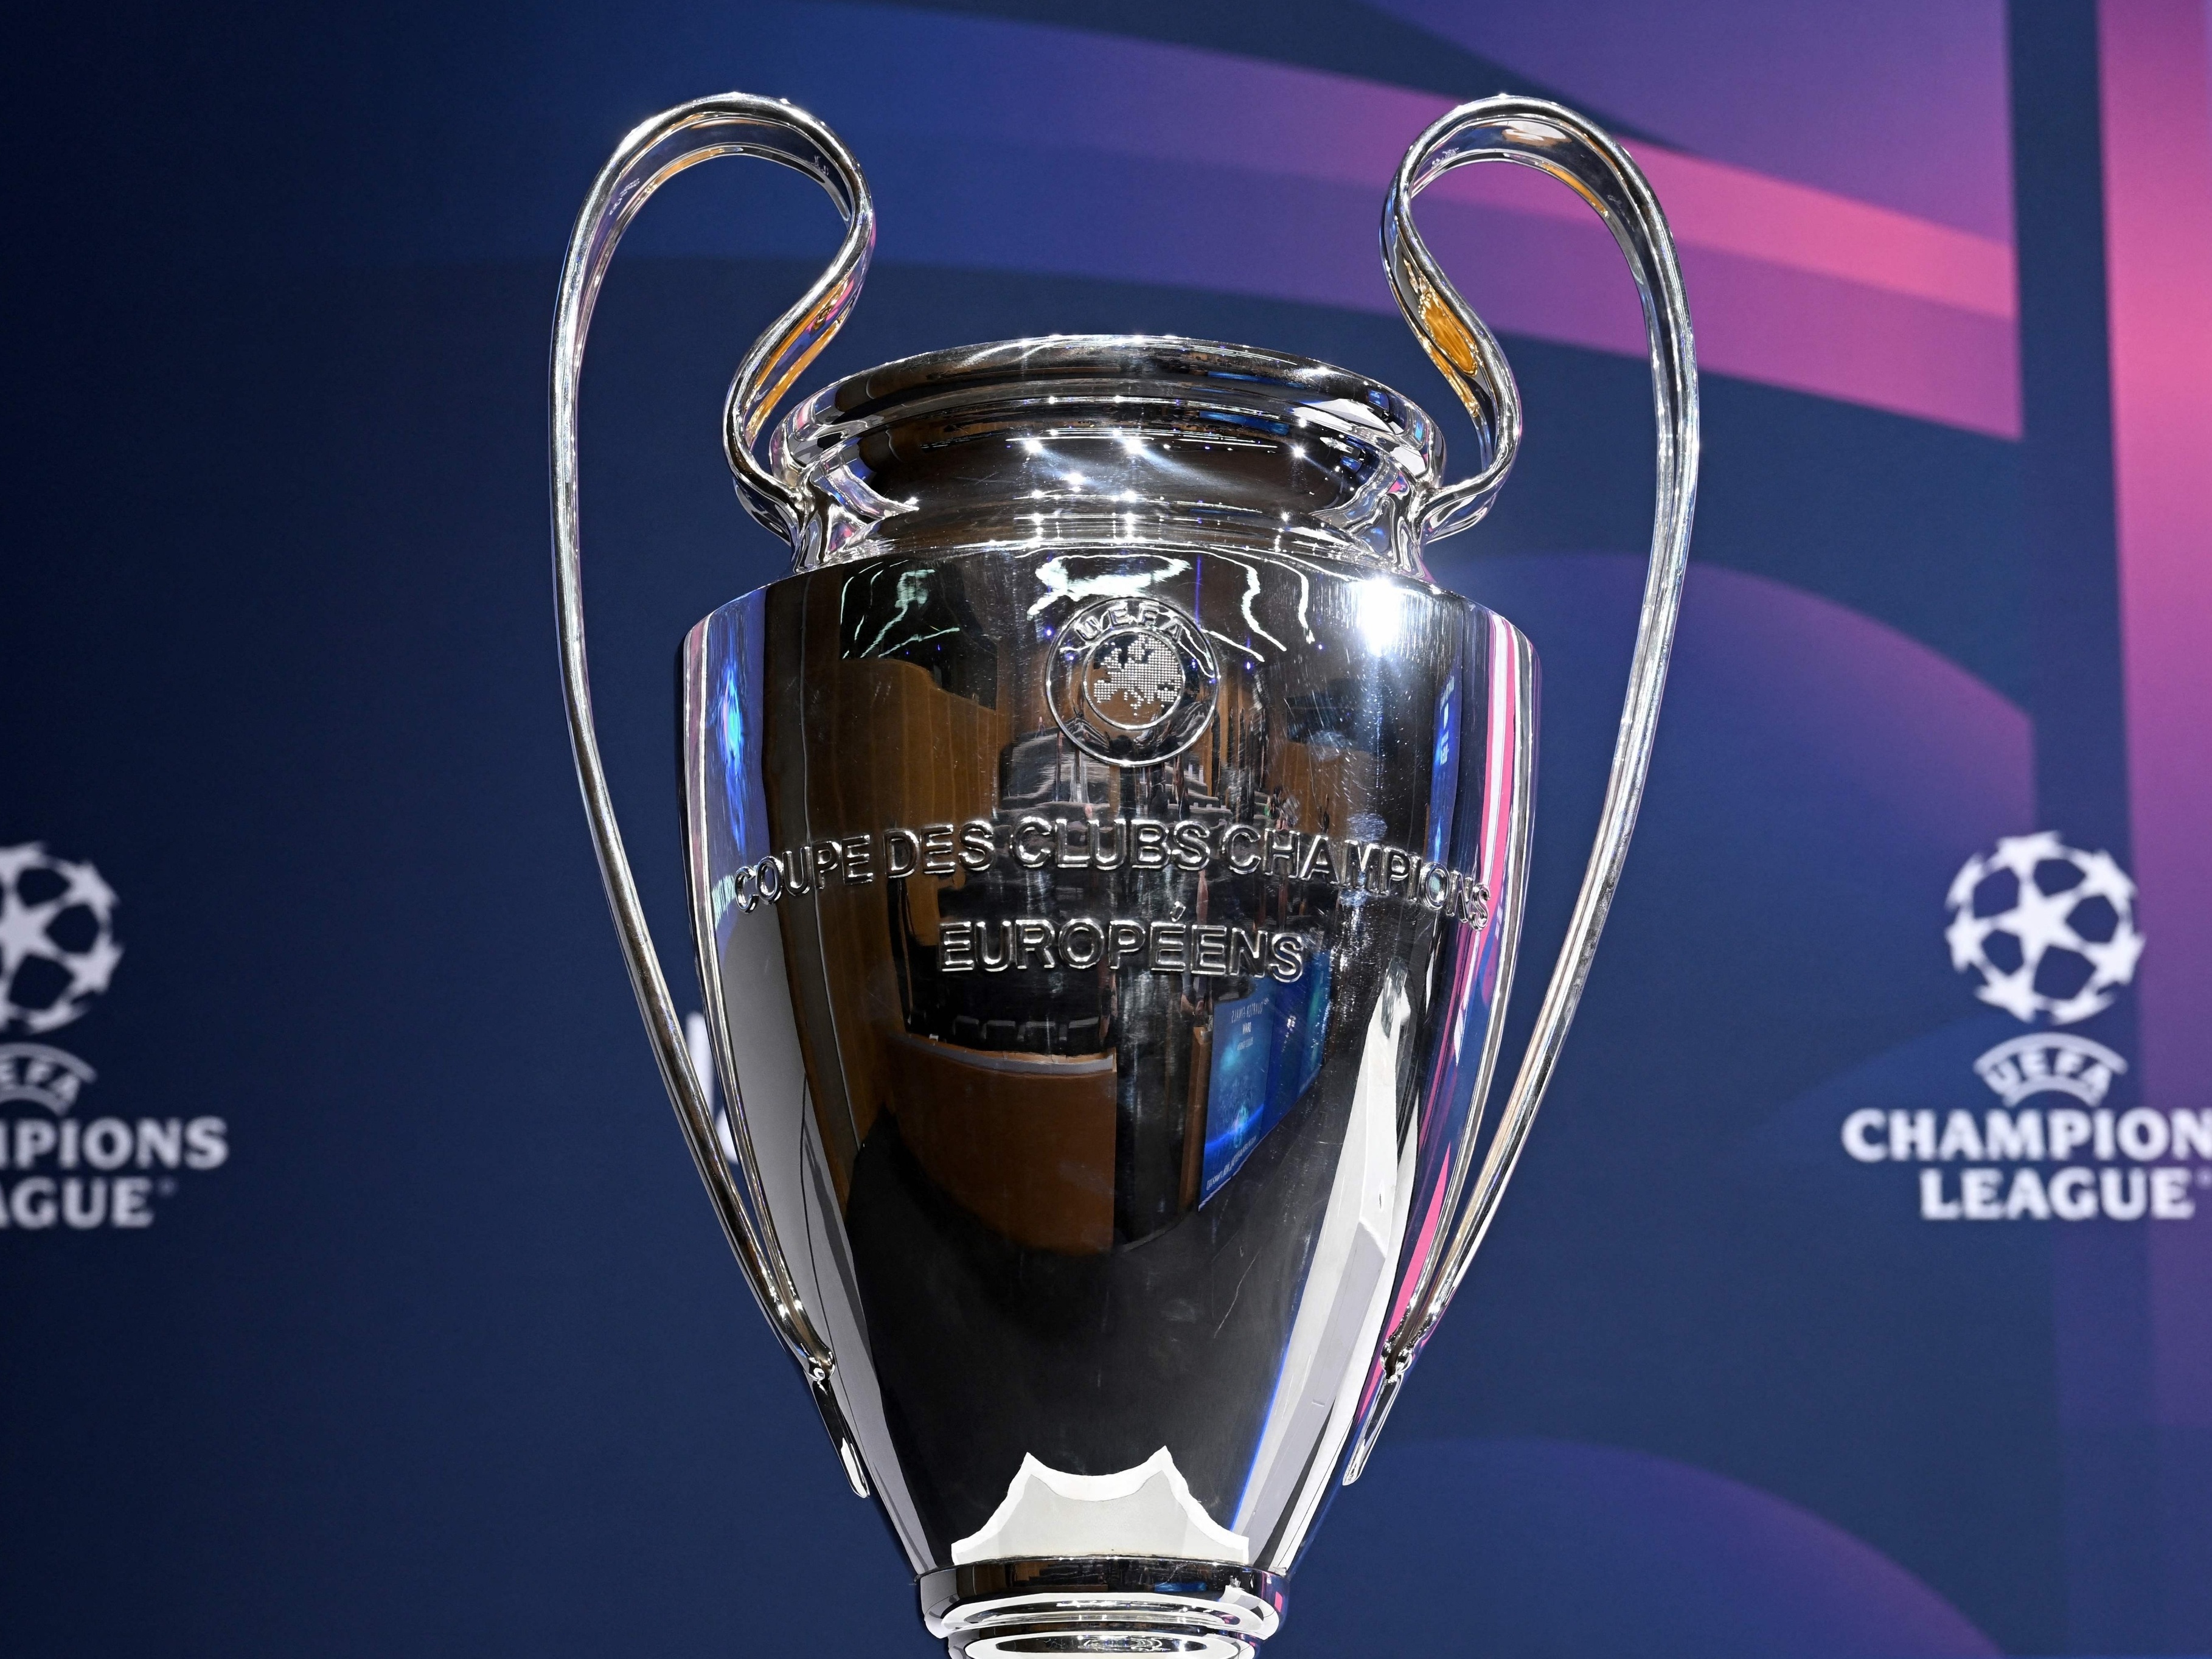 Que horas é a final da Champions League hoje? Veja horário